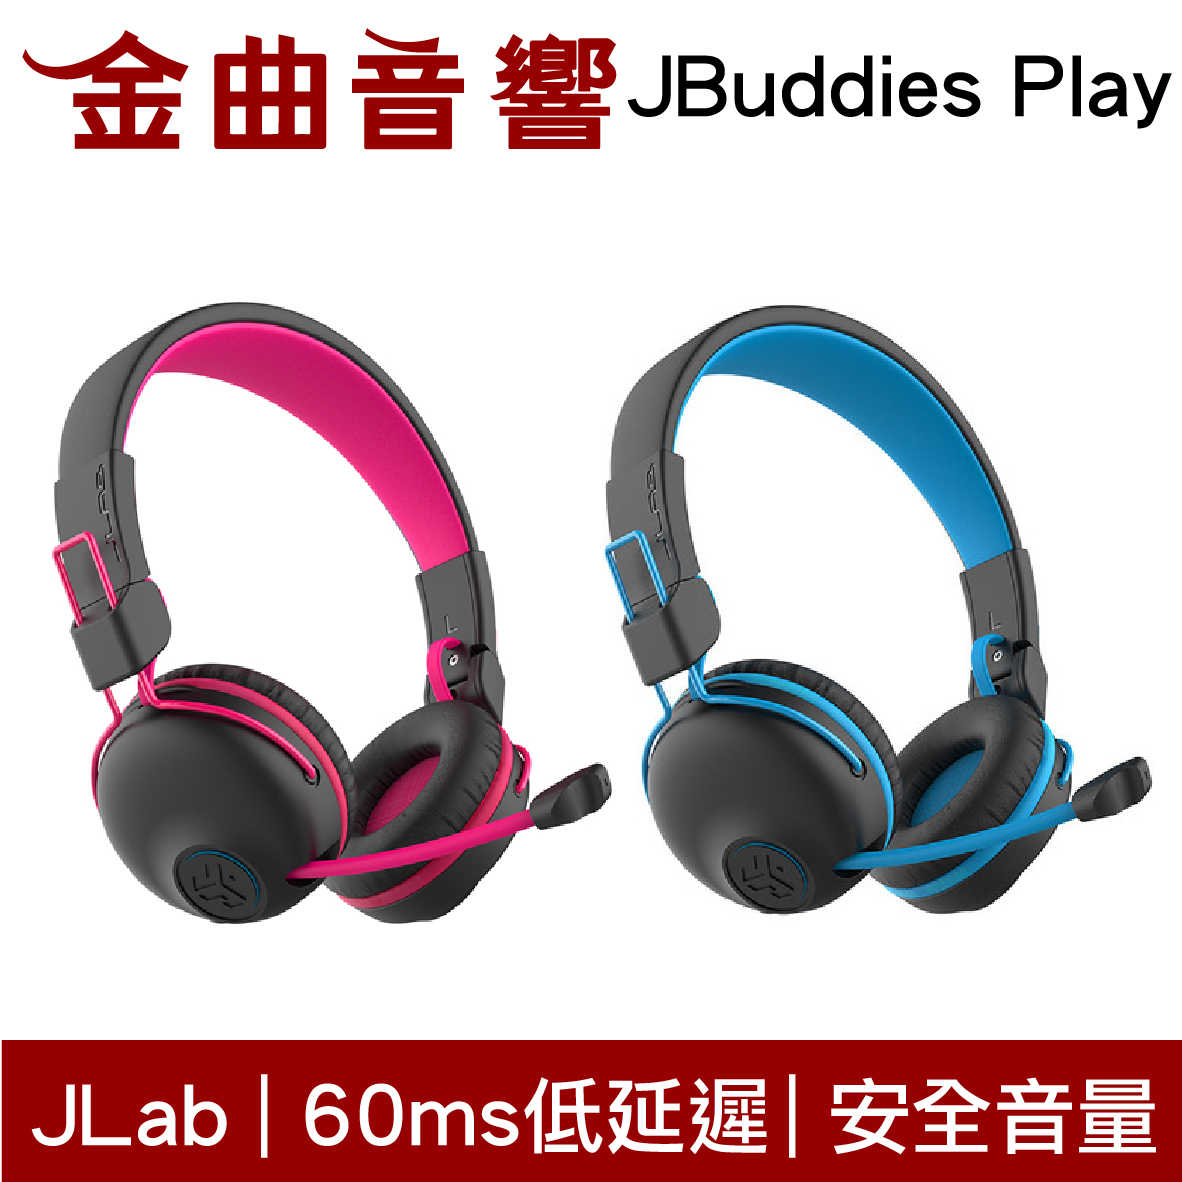 JLab JBuddies Play 無線 藍芽 電競 兒童 大人 皆適用 耳罩式 耳機 | 金曲音響